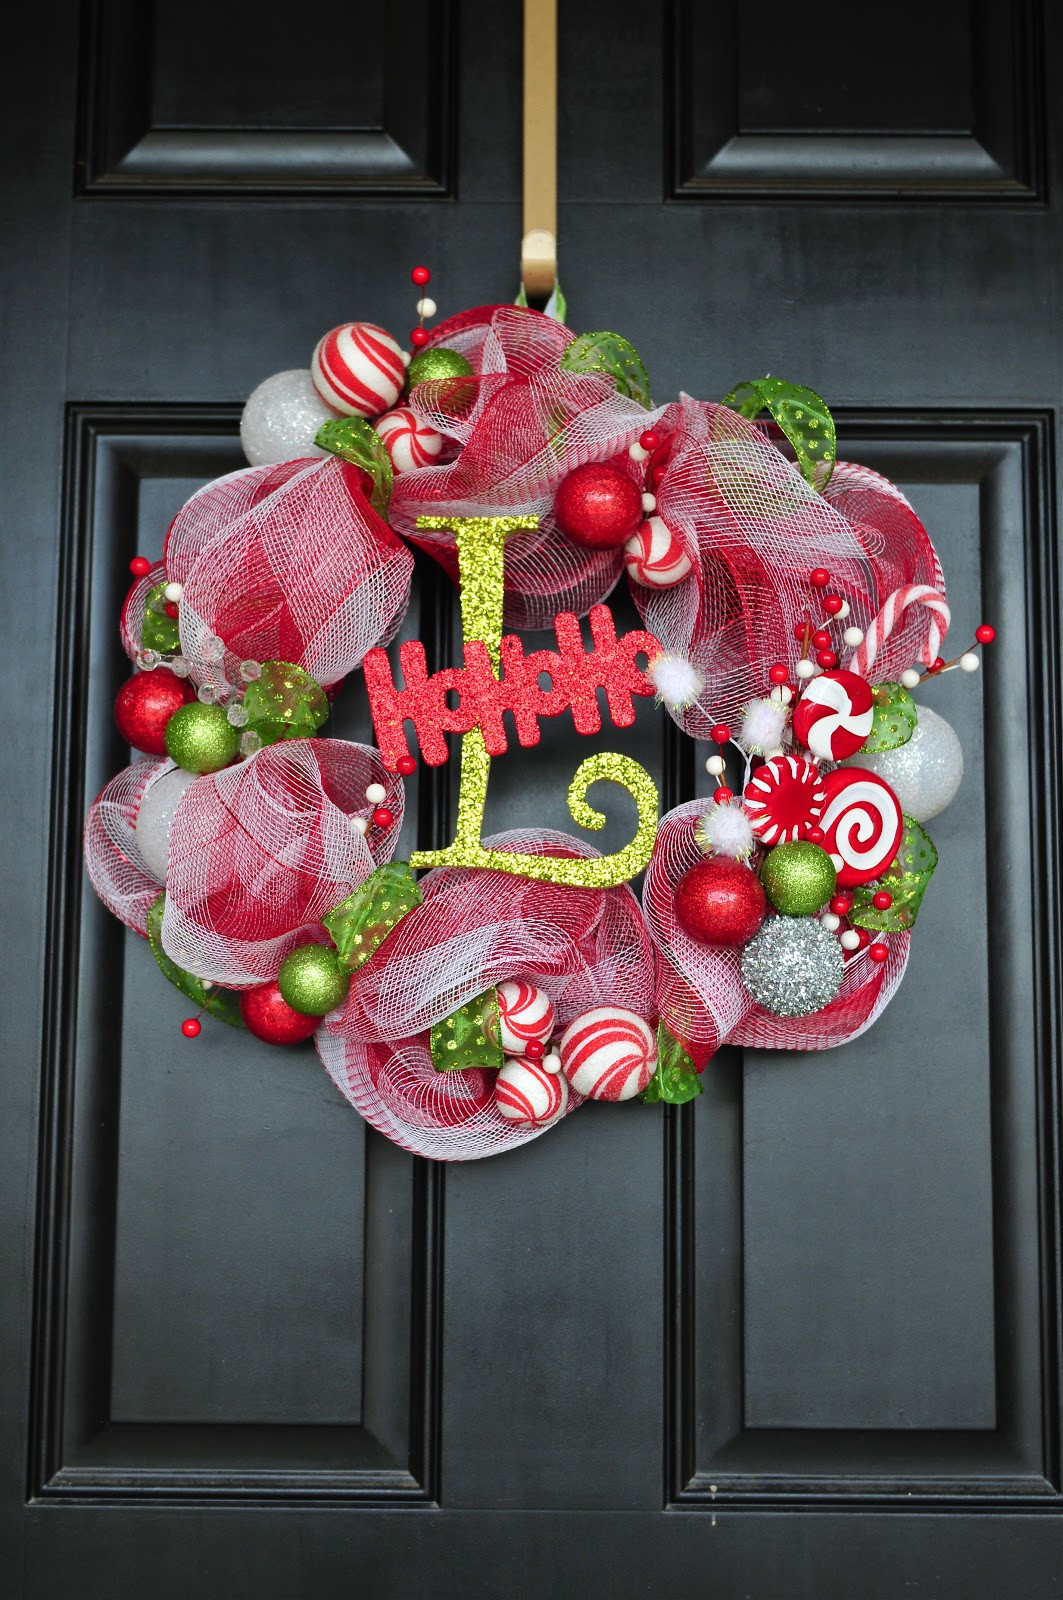 Best ideas about DIY Mesh Wreath
. Save or Pin DIY Til We Die Easy Christmas mesh wreaths Now.